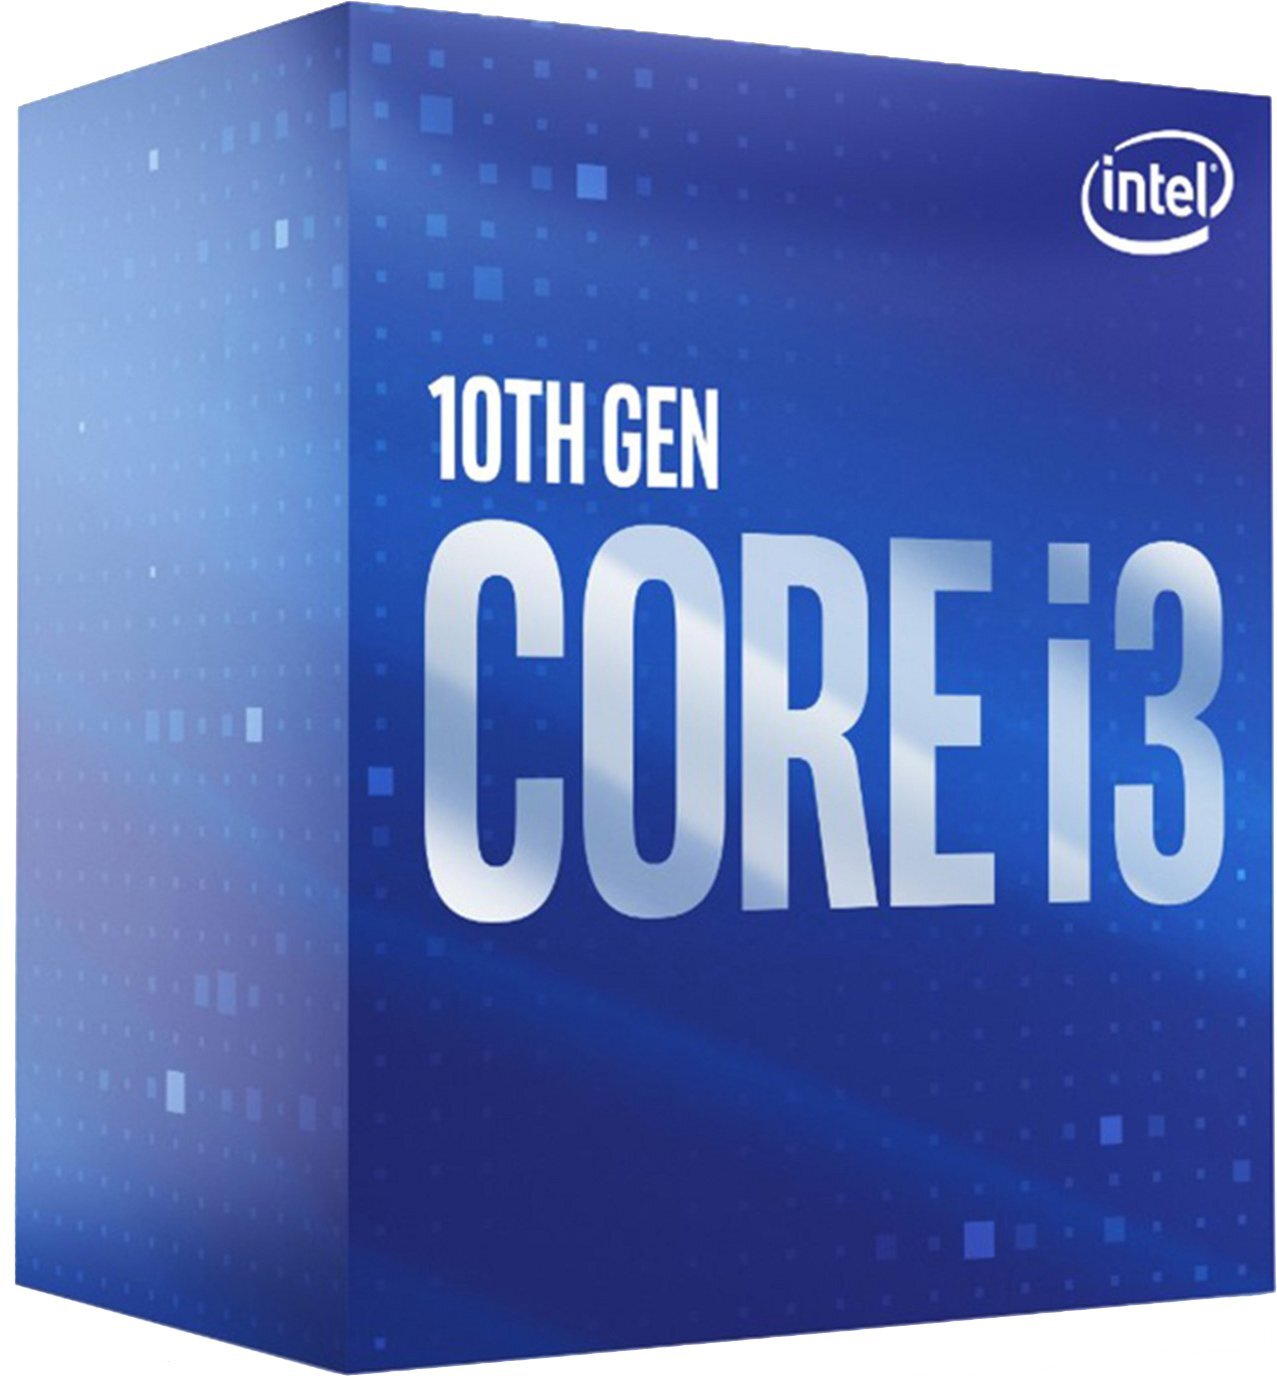 Процессор Intel Core i3-10105 4/8 3.7GHz 6M LGA1200 65W box (BX8070110105) фото 1